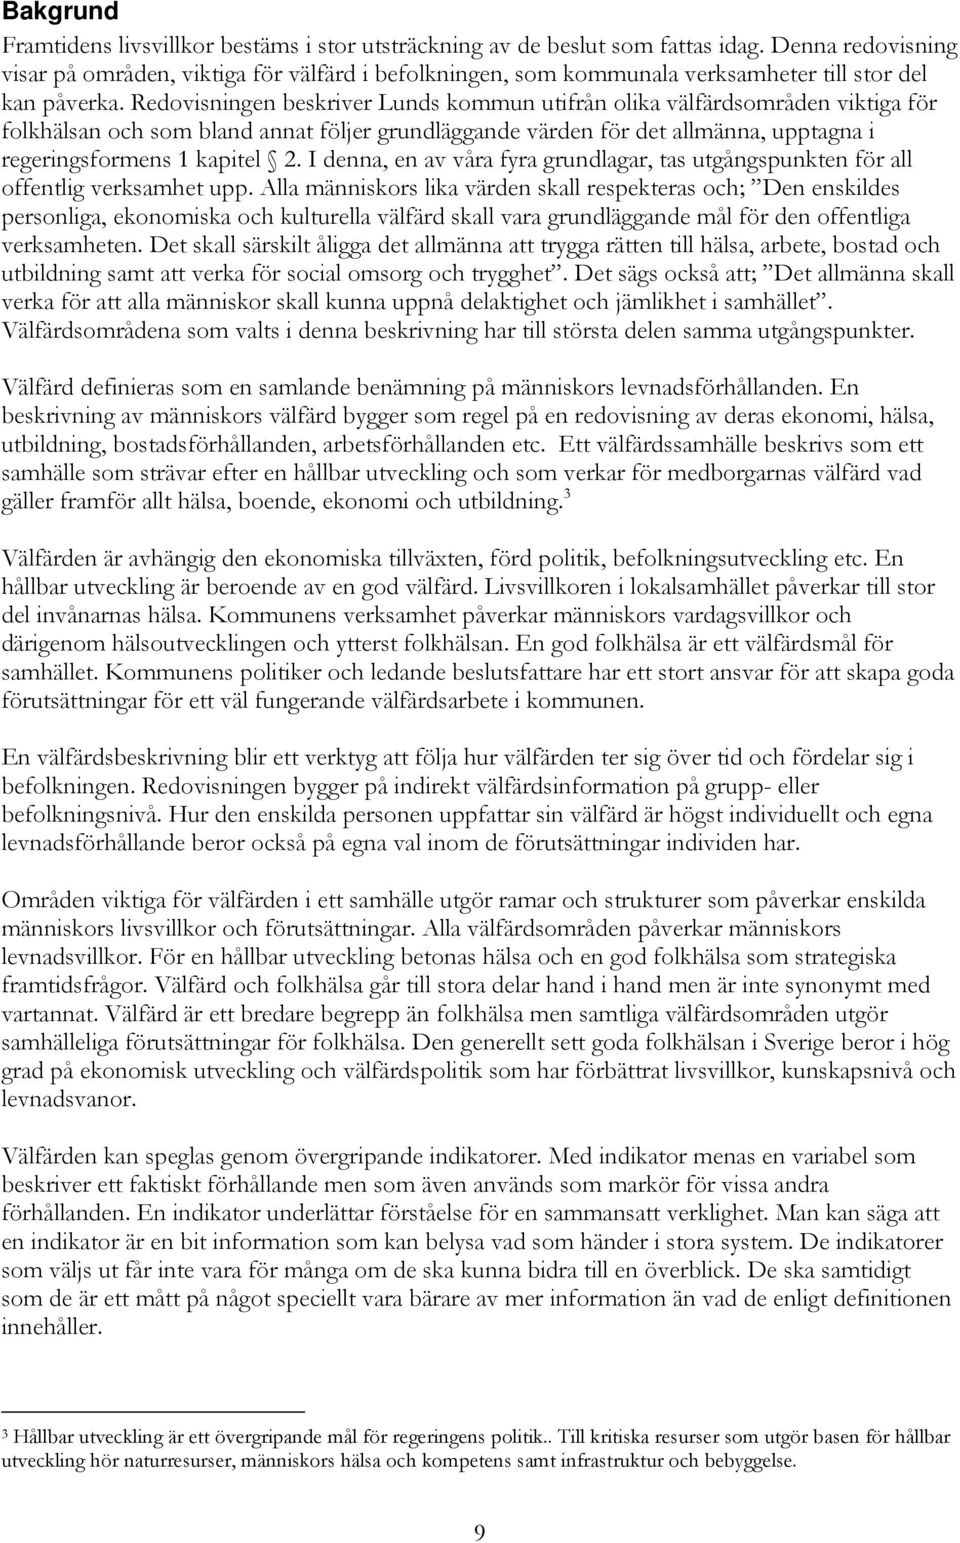 Redovisningen beskriver Lunds kommun utifrån olika välfärdsområden viktiga för folkhälsan och som bland annat följer grundläggande värden för det allmänna, upptagna i regeringsformens 1 kapitel 2.